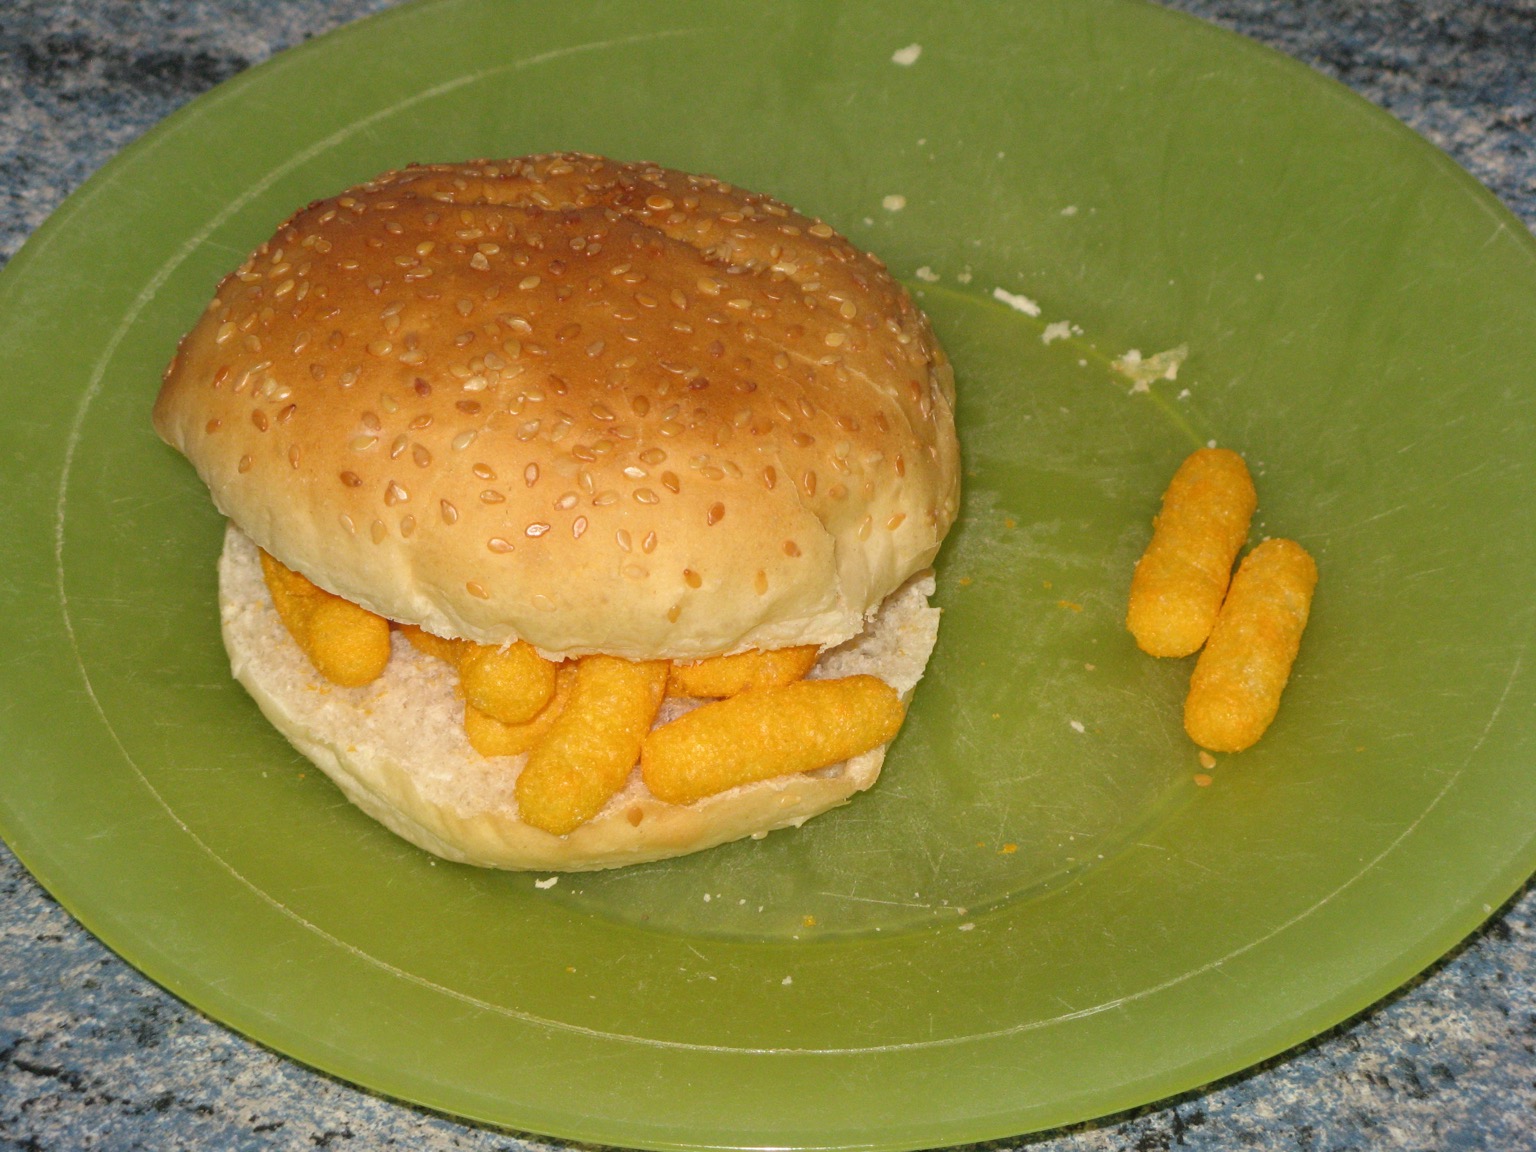 Wotsits in a sesame seed bun on a green plate